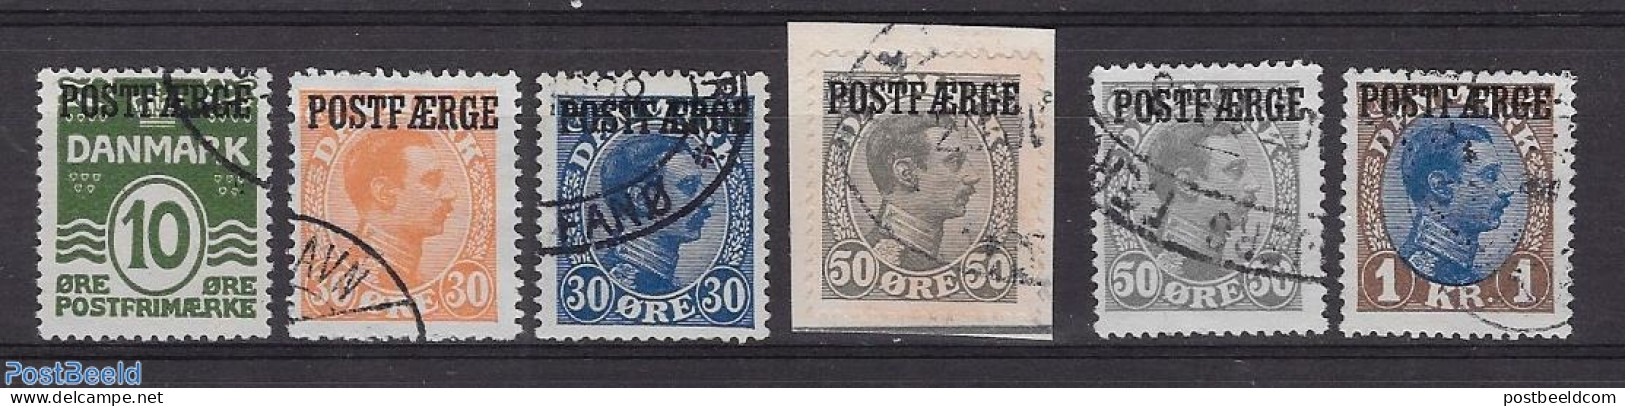 Denmark 1922 Postfaerge 6v, Mint NH - Unused Stamps